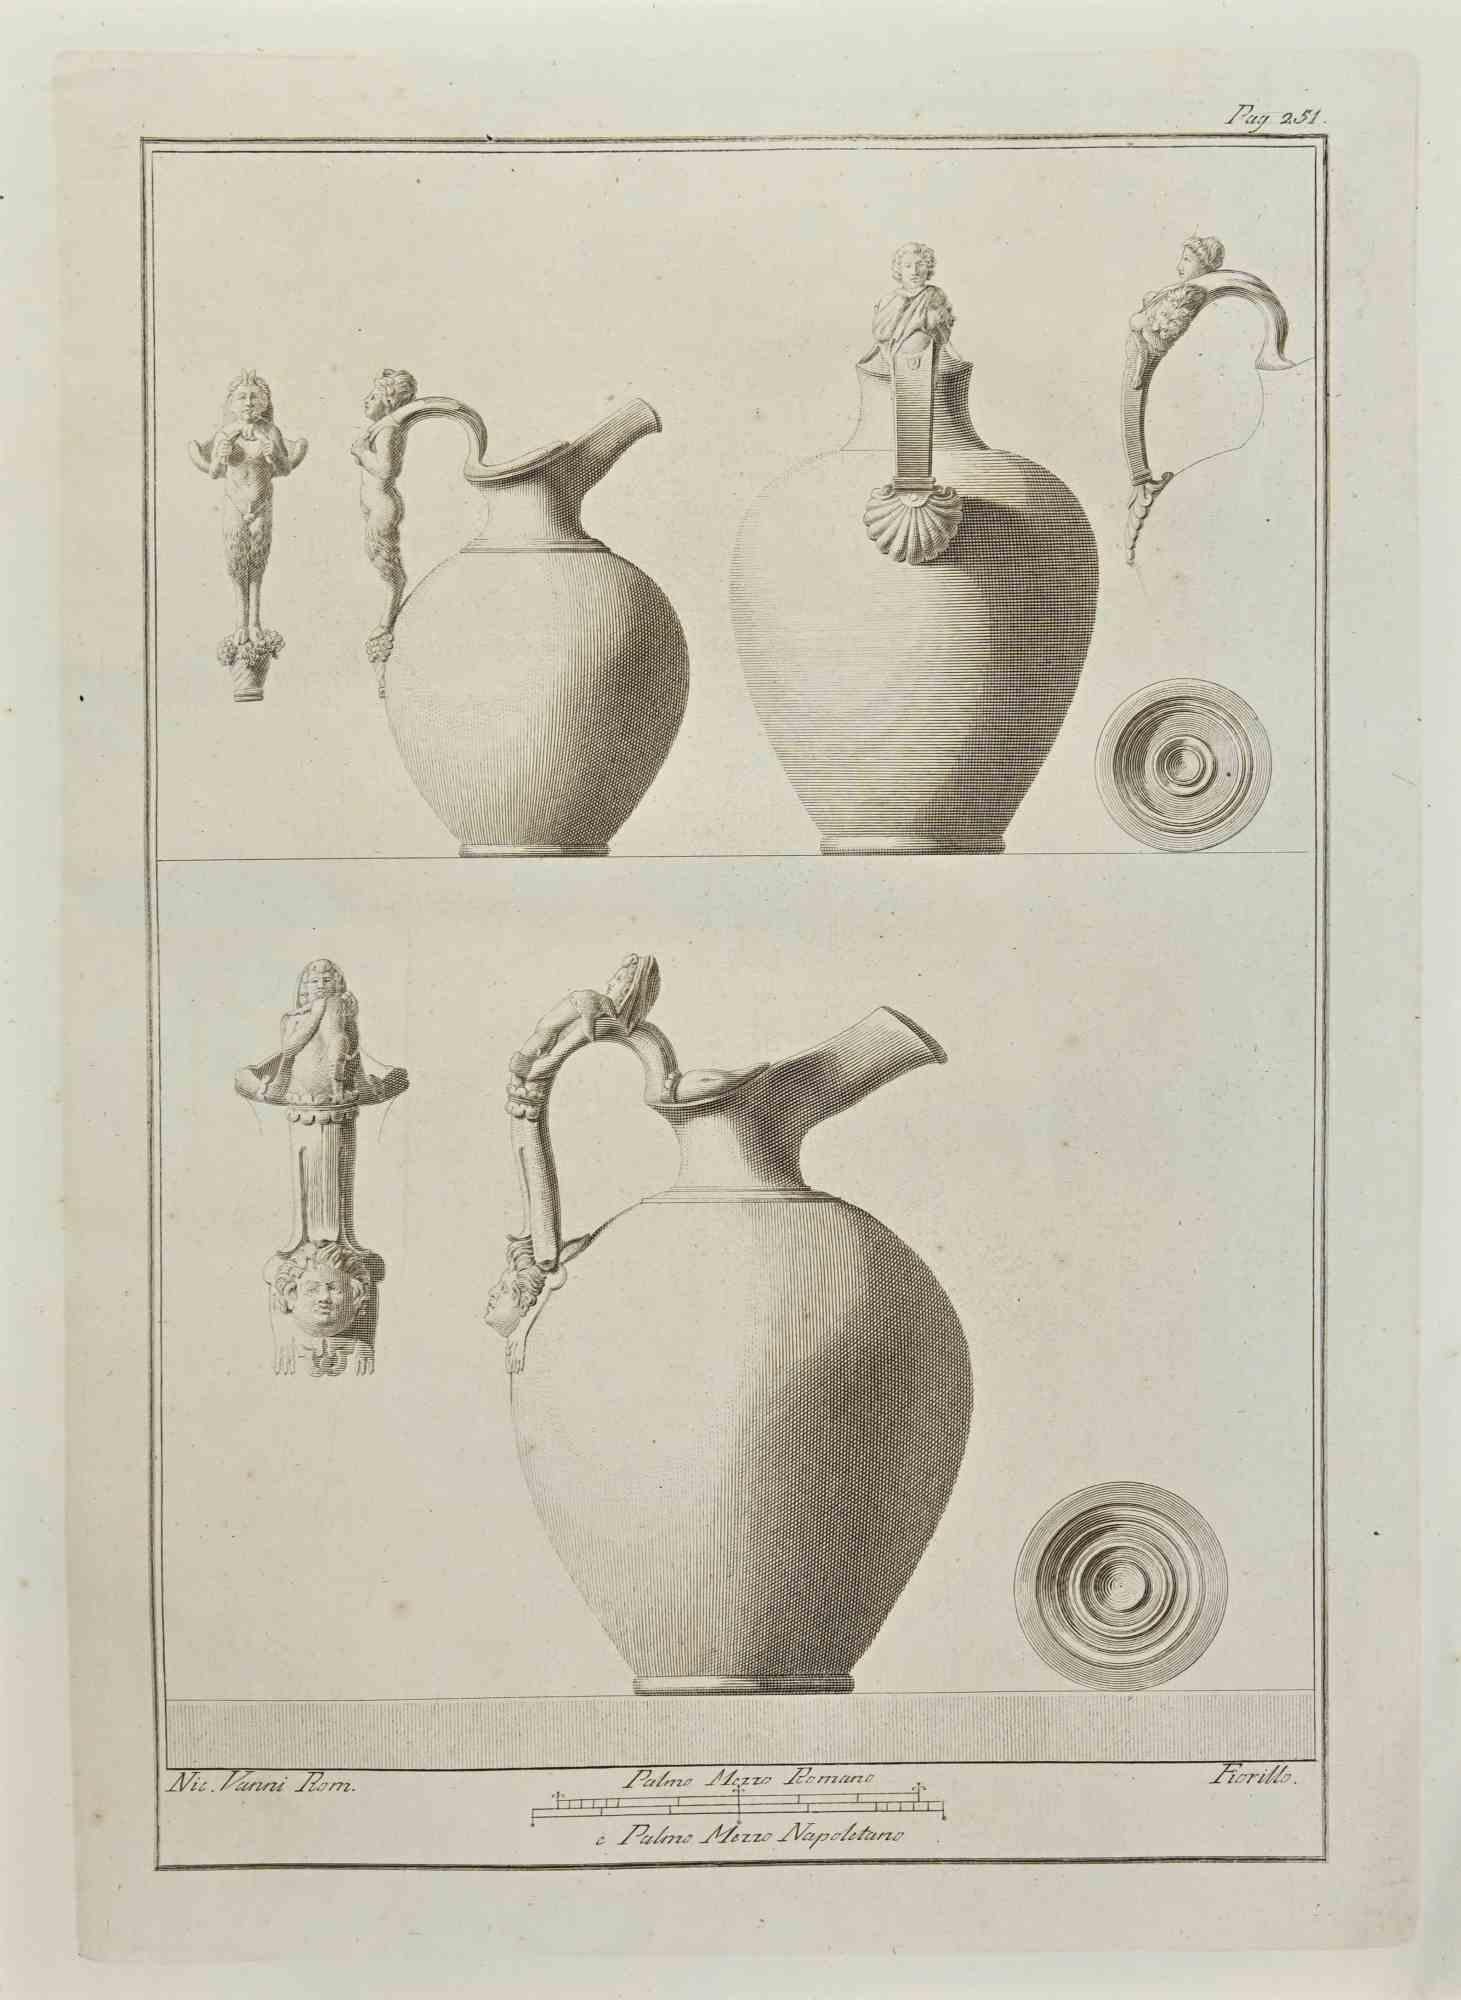 Ancient Roman Jars from "Antiquities of Herculaneum" ist eine Radierung auf Papier von Nicola Fiorillo aus dem 18.

Signiert auf der Platte.

Gute Bedingungen.

Die Radierung gehört zu der Druckserie "Antiquities of Herculaneum Exposed"